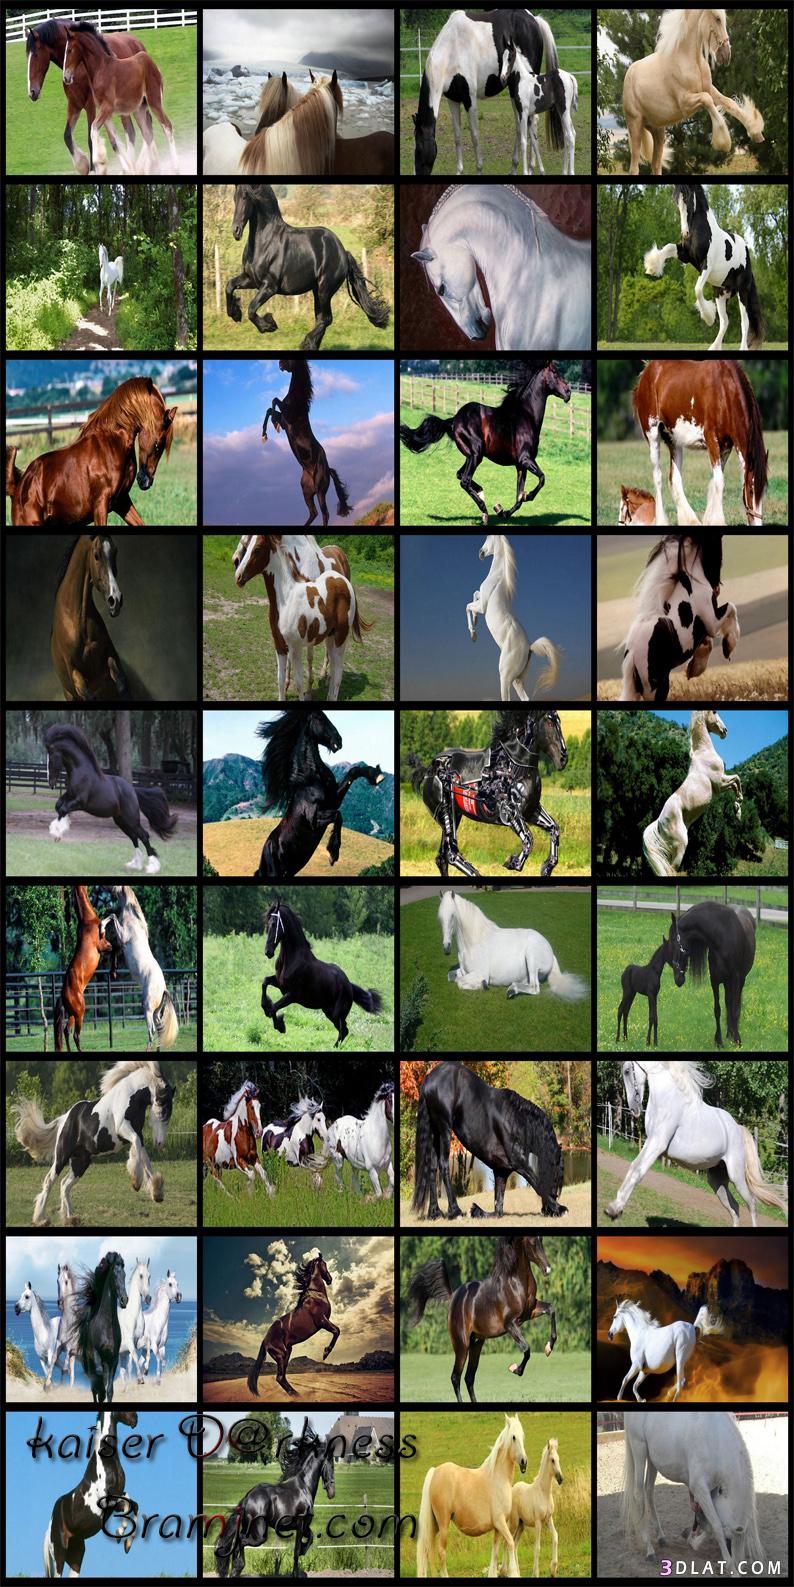 اجمل خيول العالم مجموعه من الصور في غايه الجمال منتهي الروعه والابداع